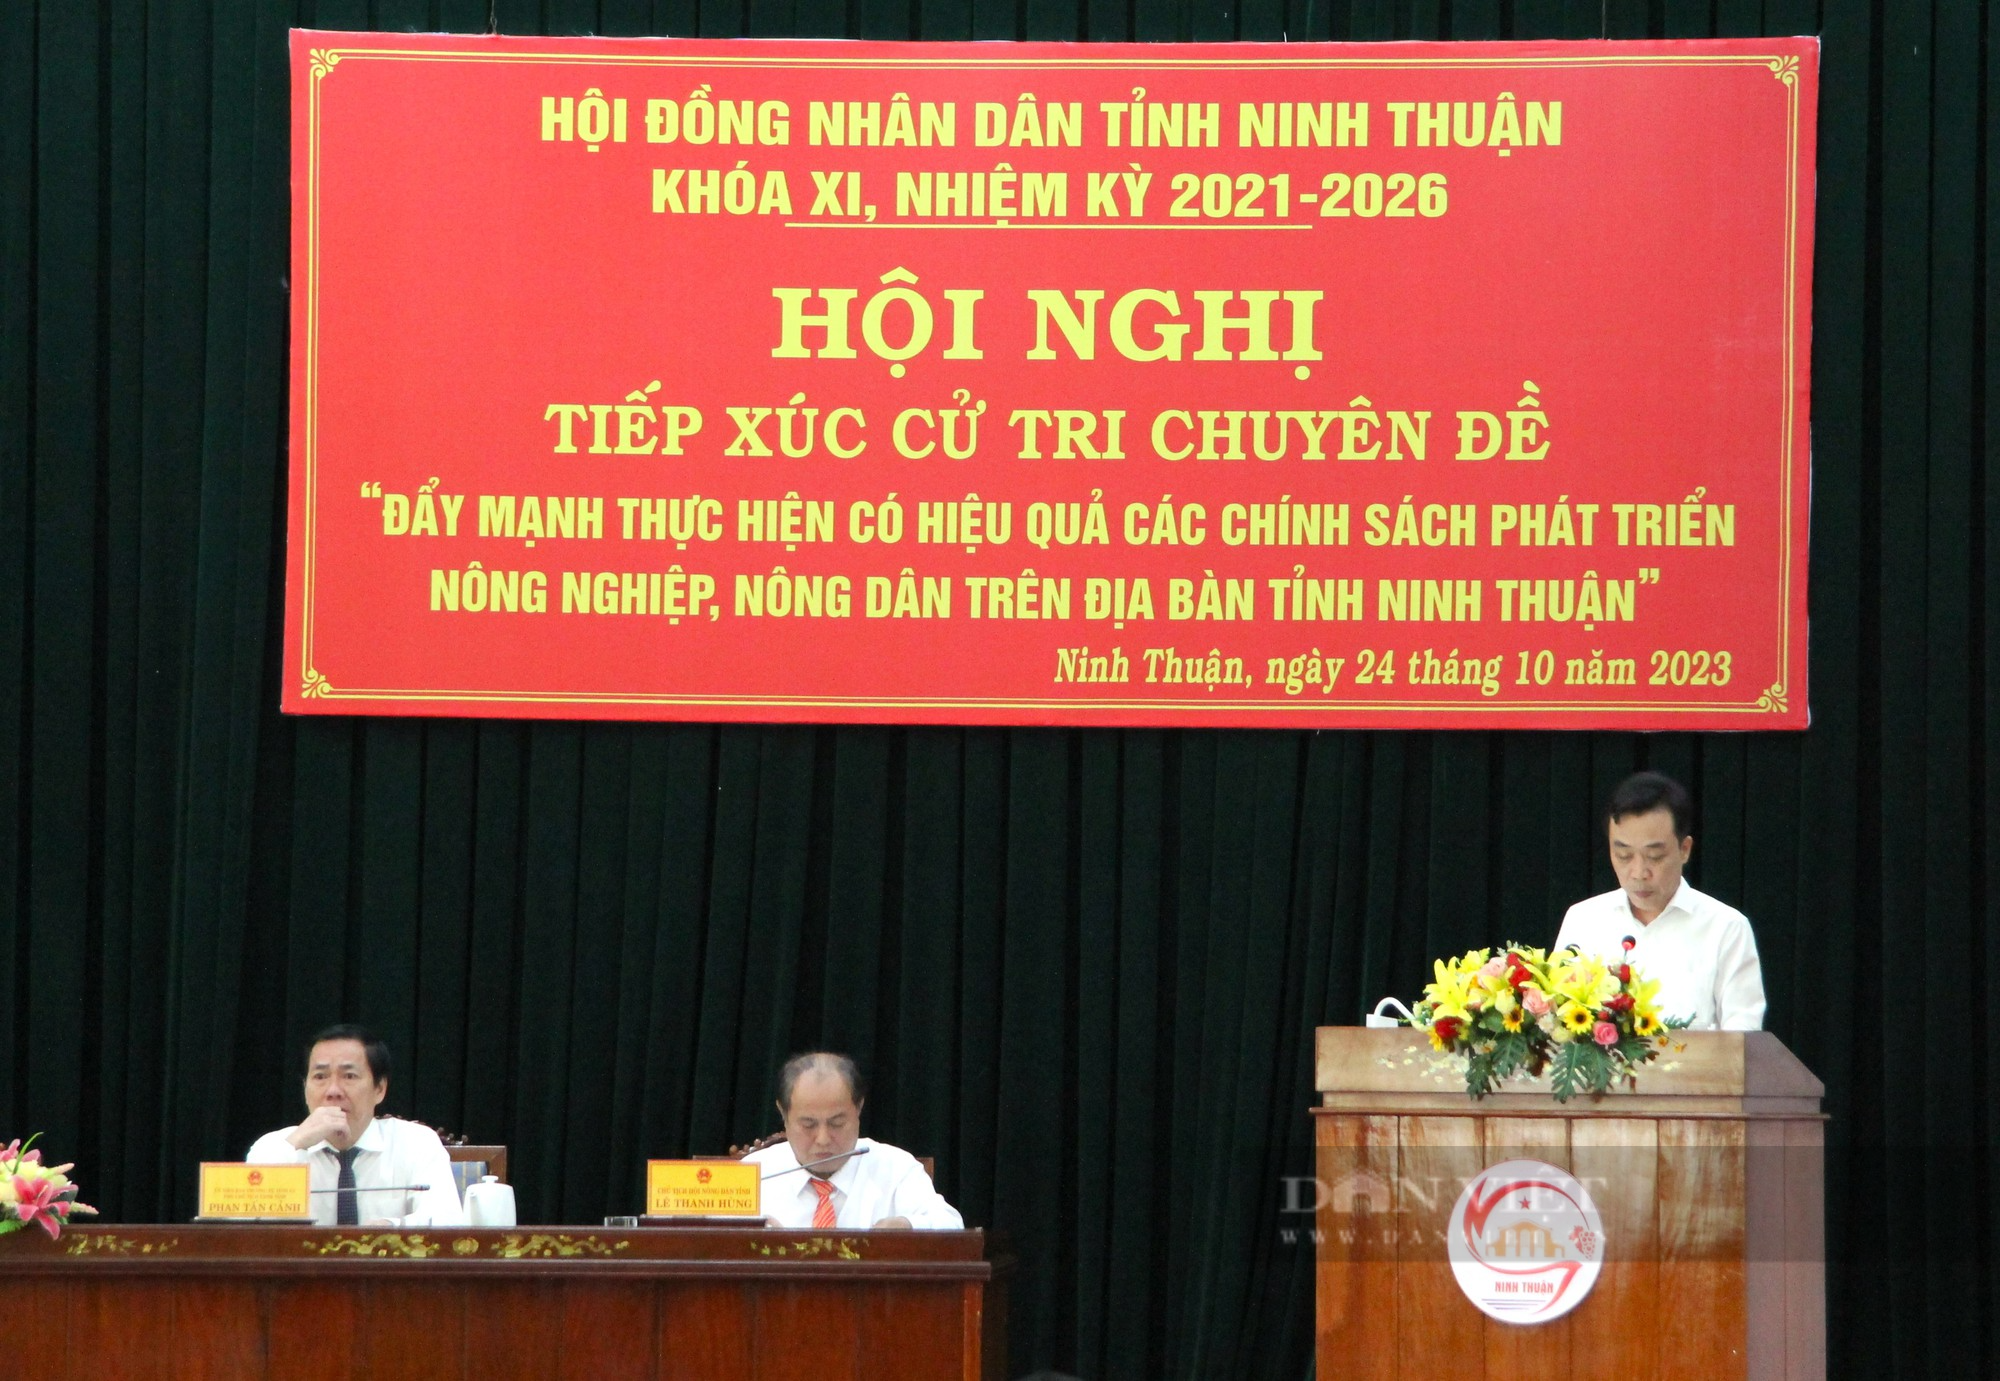 Tiếp xúc cử tri chuyên đề nông nghiệp, nông dân tại Ninh Thuận - Ảnh 3.